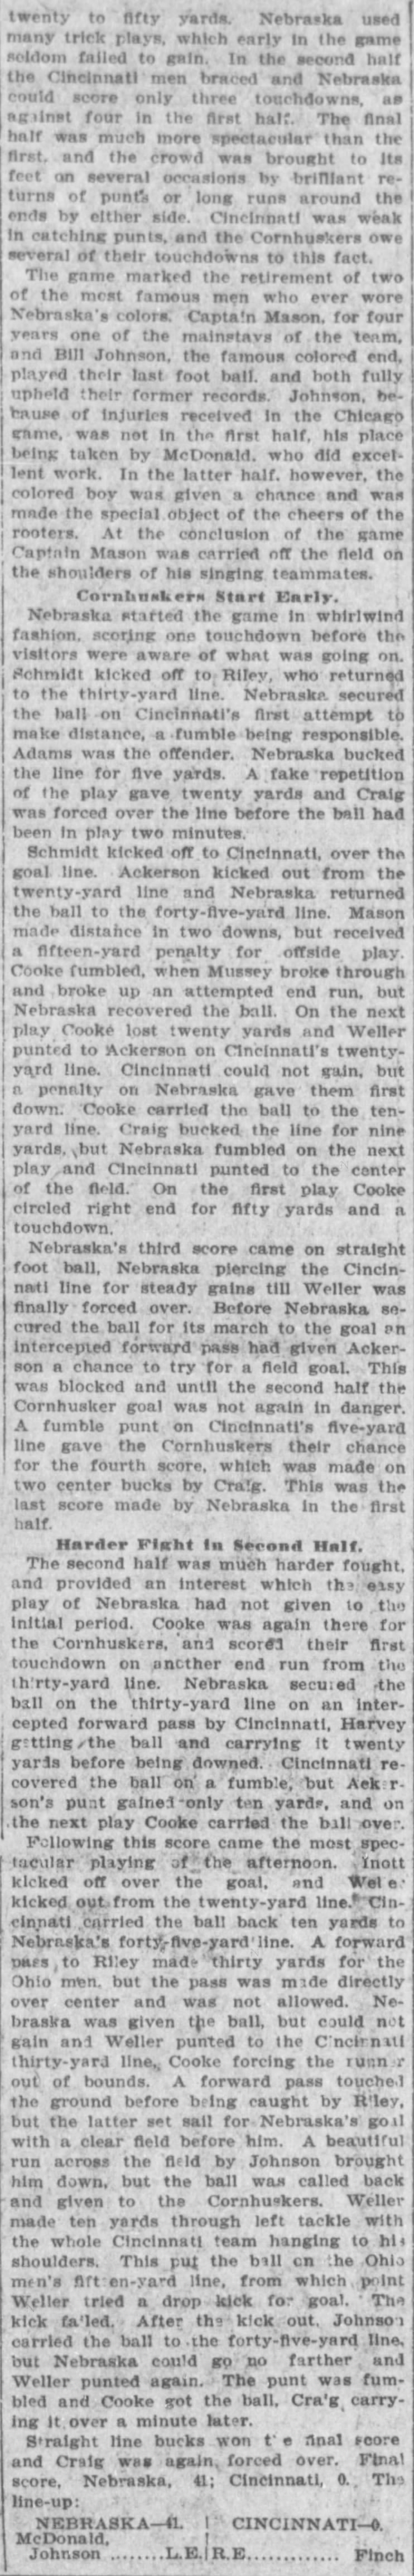 1906 Nebraska-Cincy football part 2